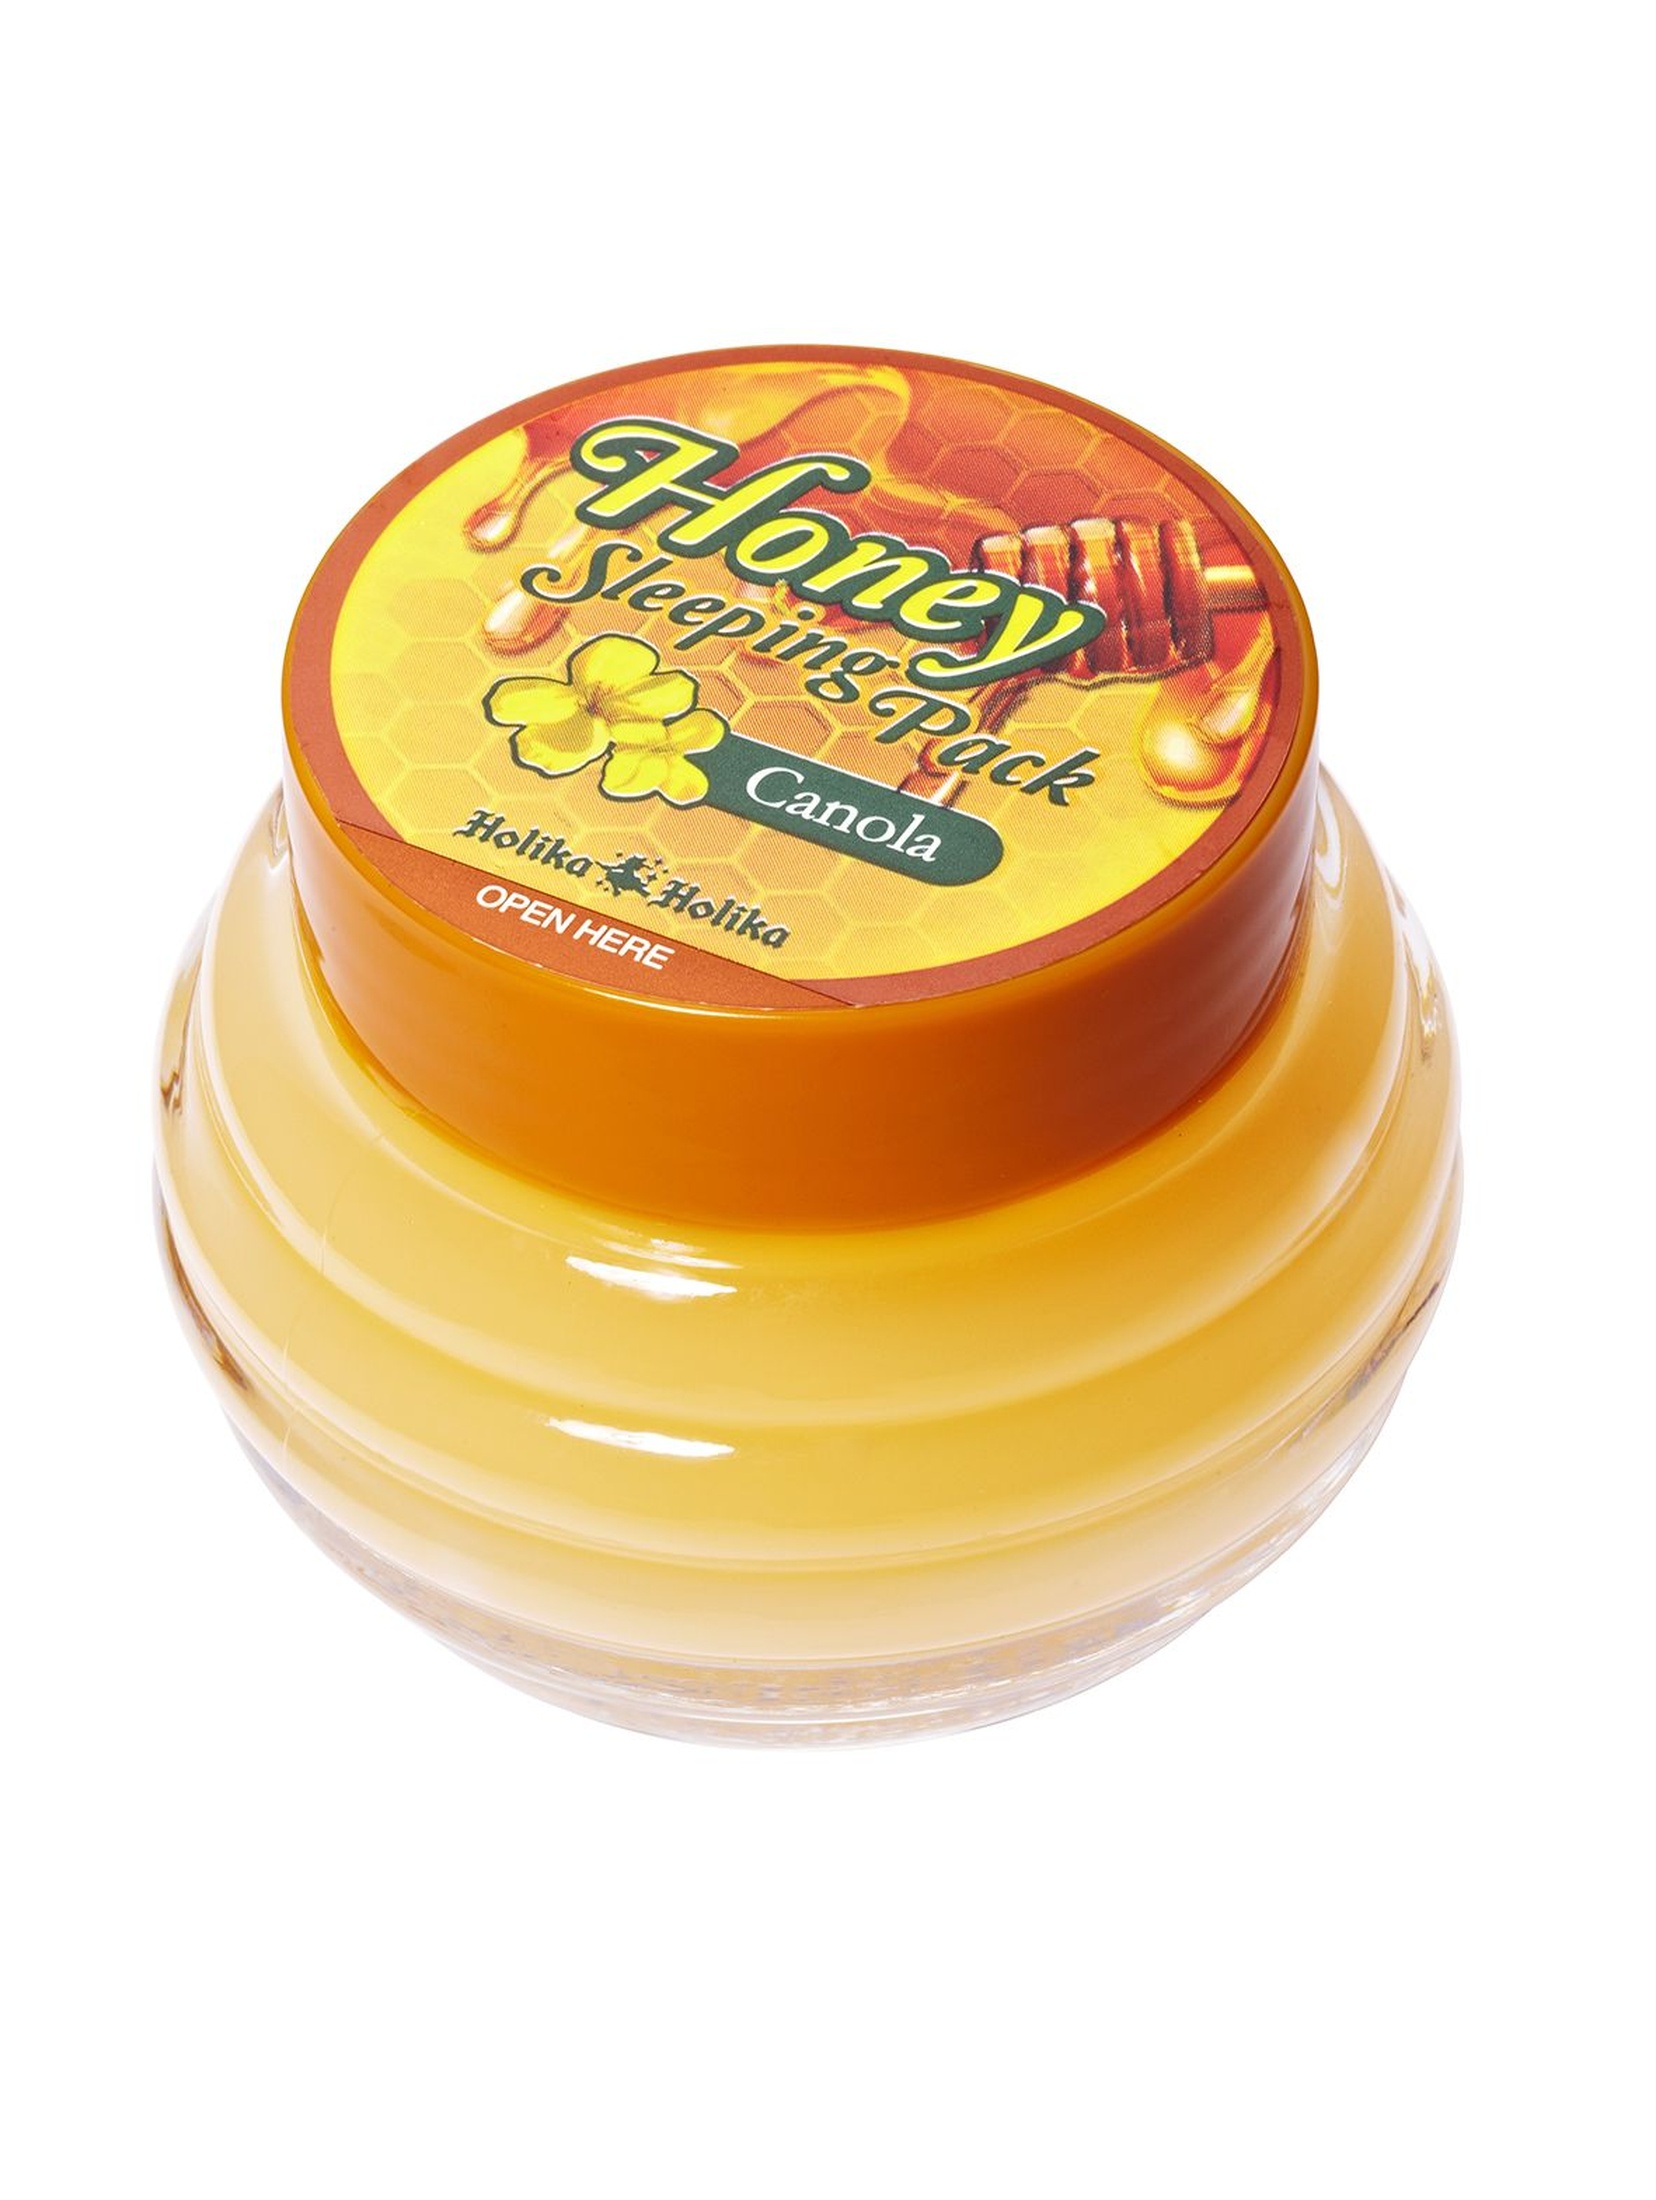 Holika Holika Honey Sleeping Pack(Canola) całonocna maseczka z miodem -90 ml